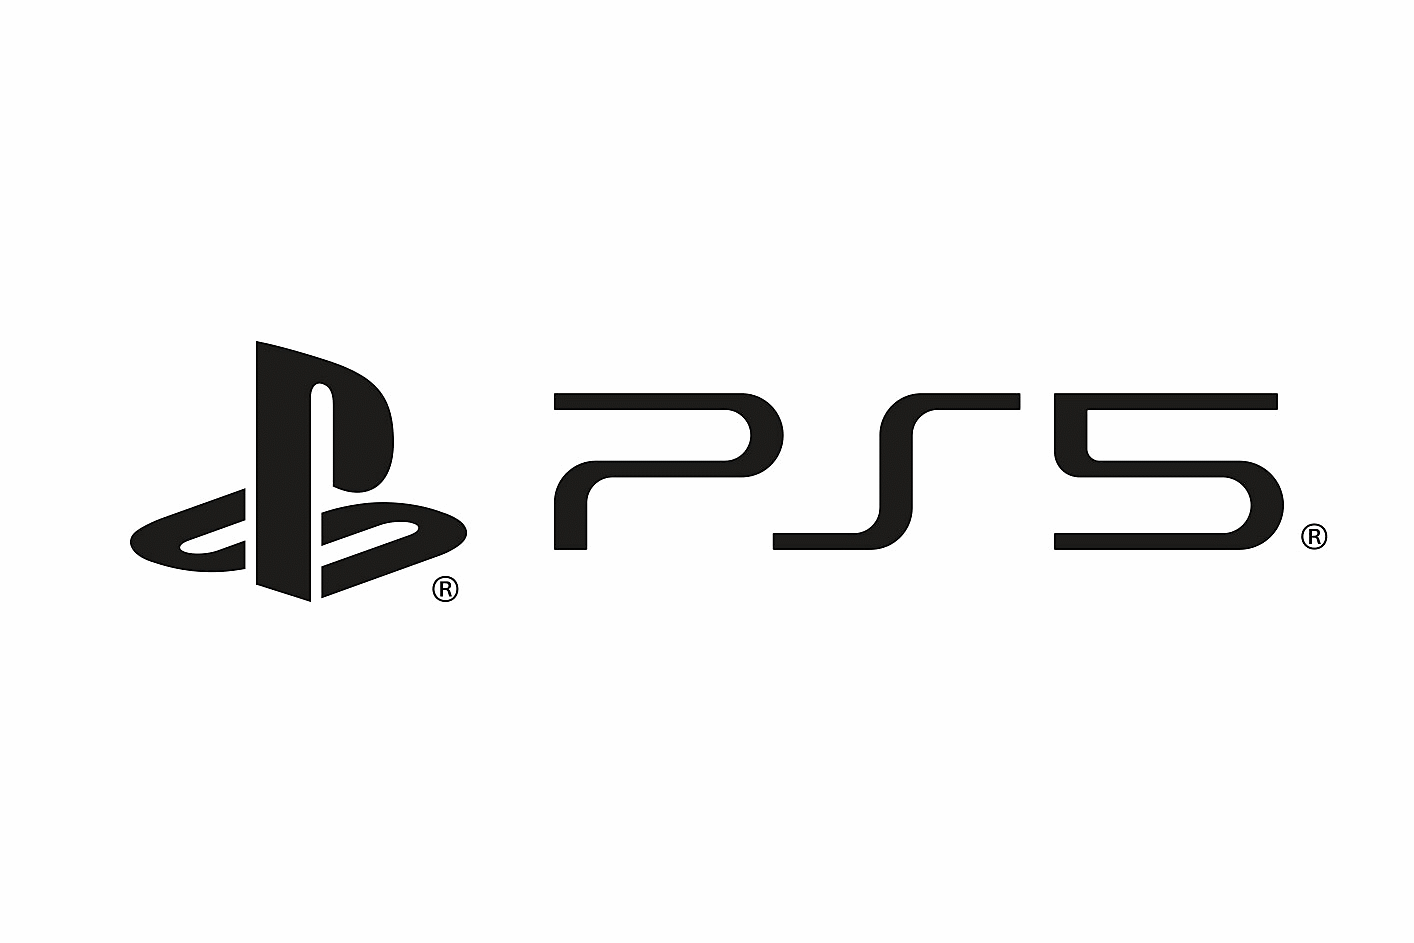 The Sony PS5 logo